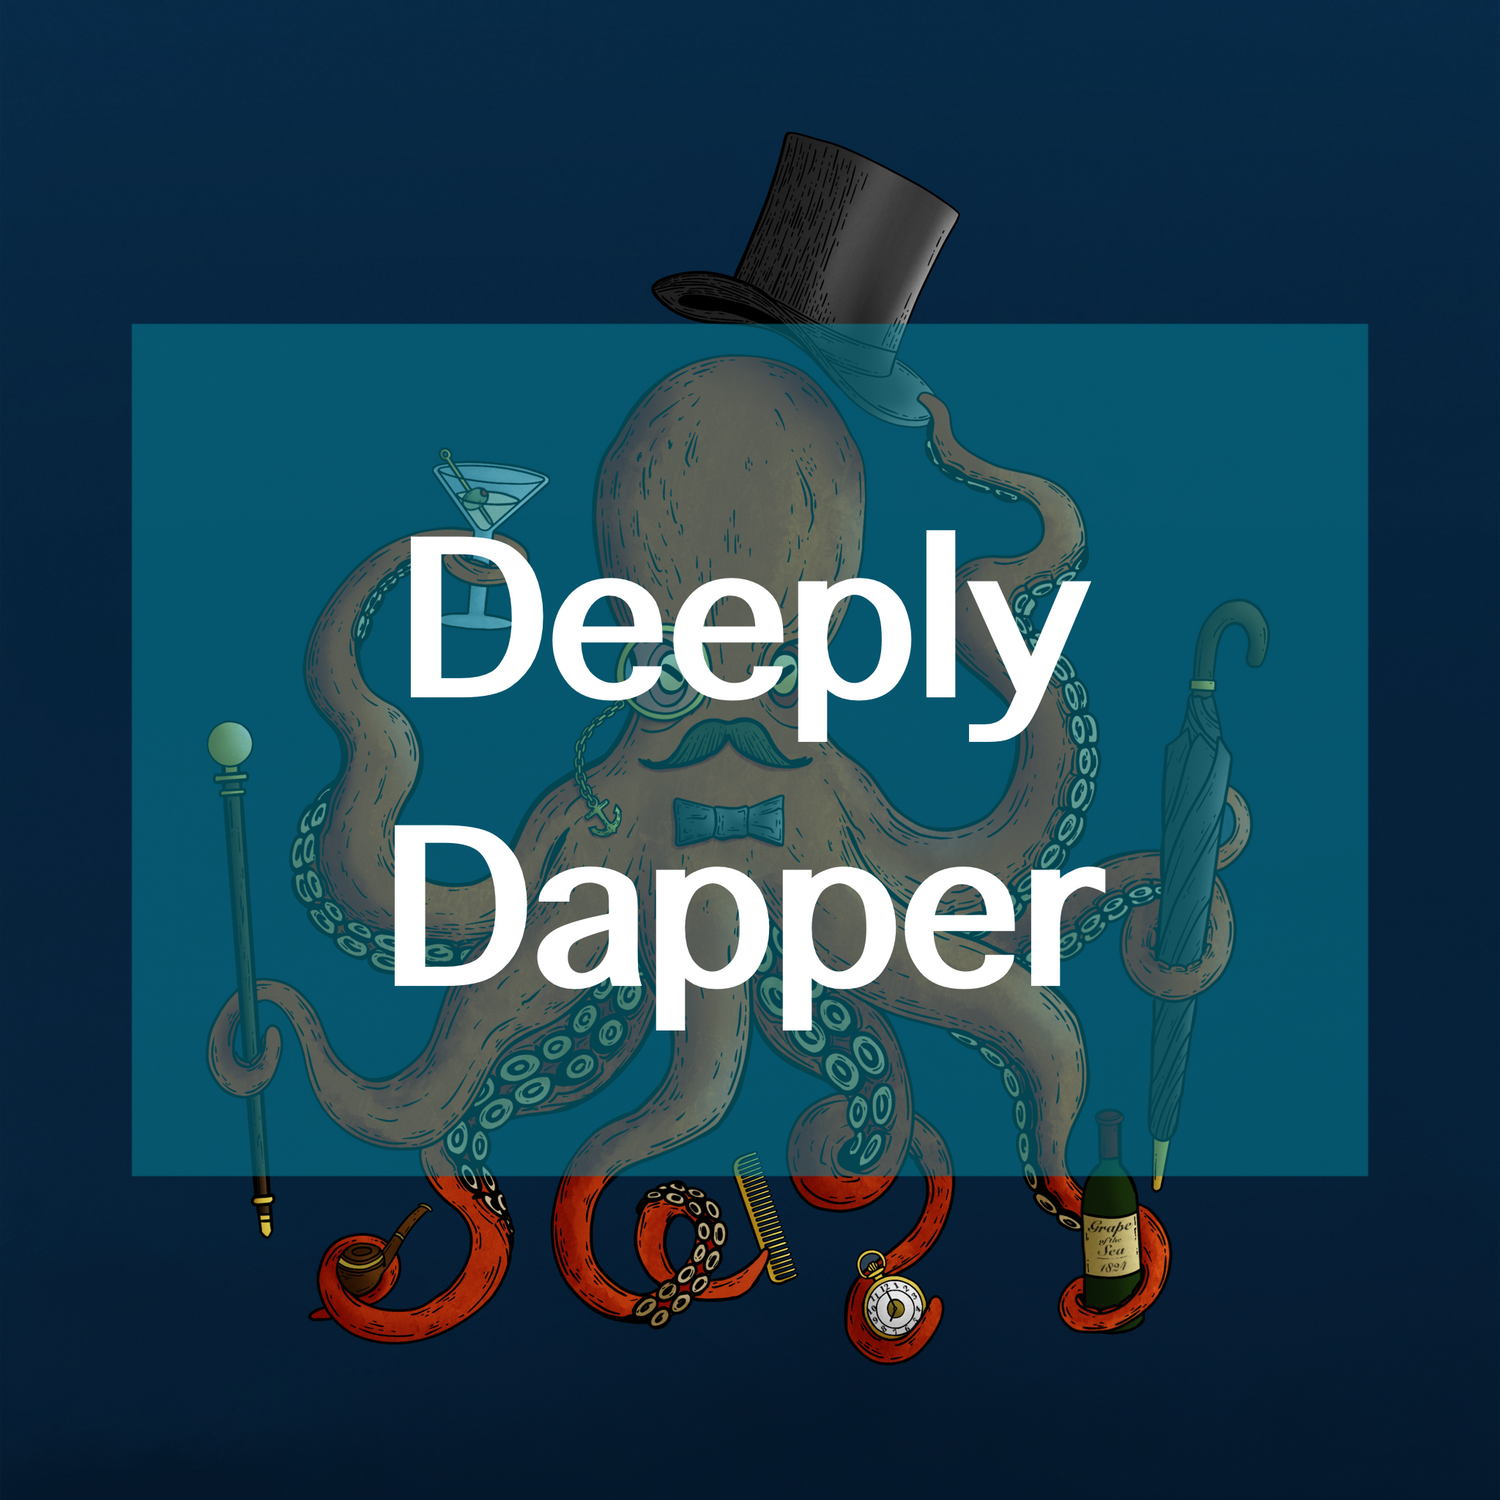 Deeply Dapper